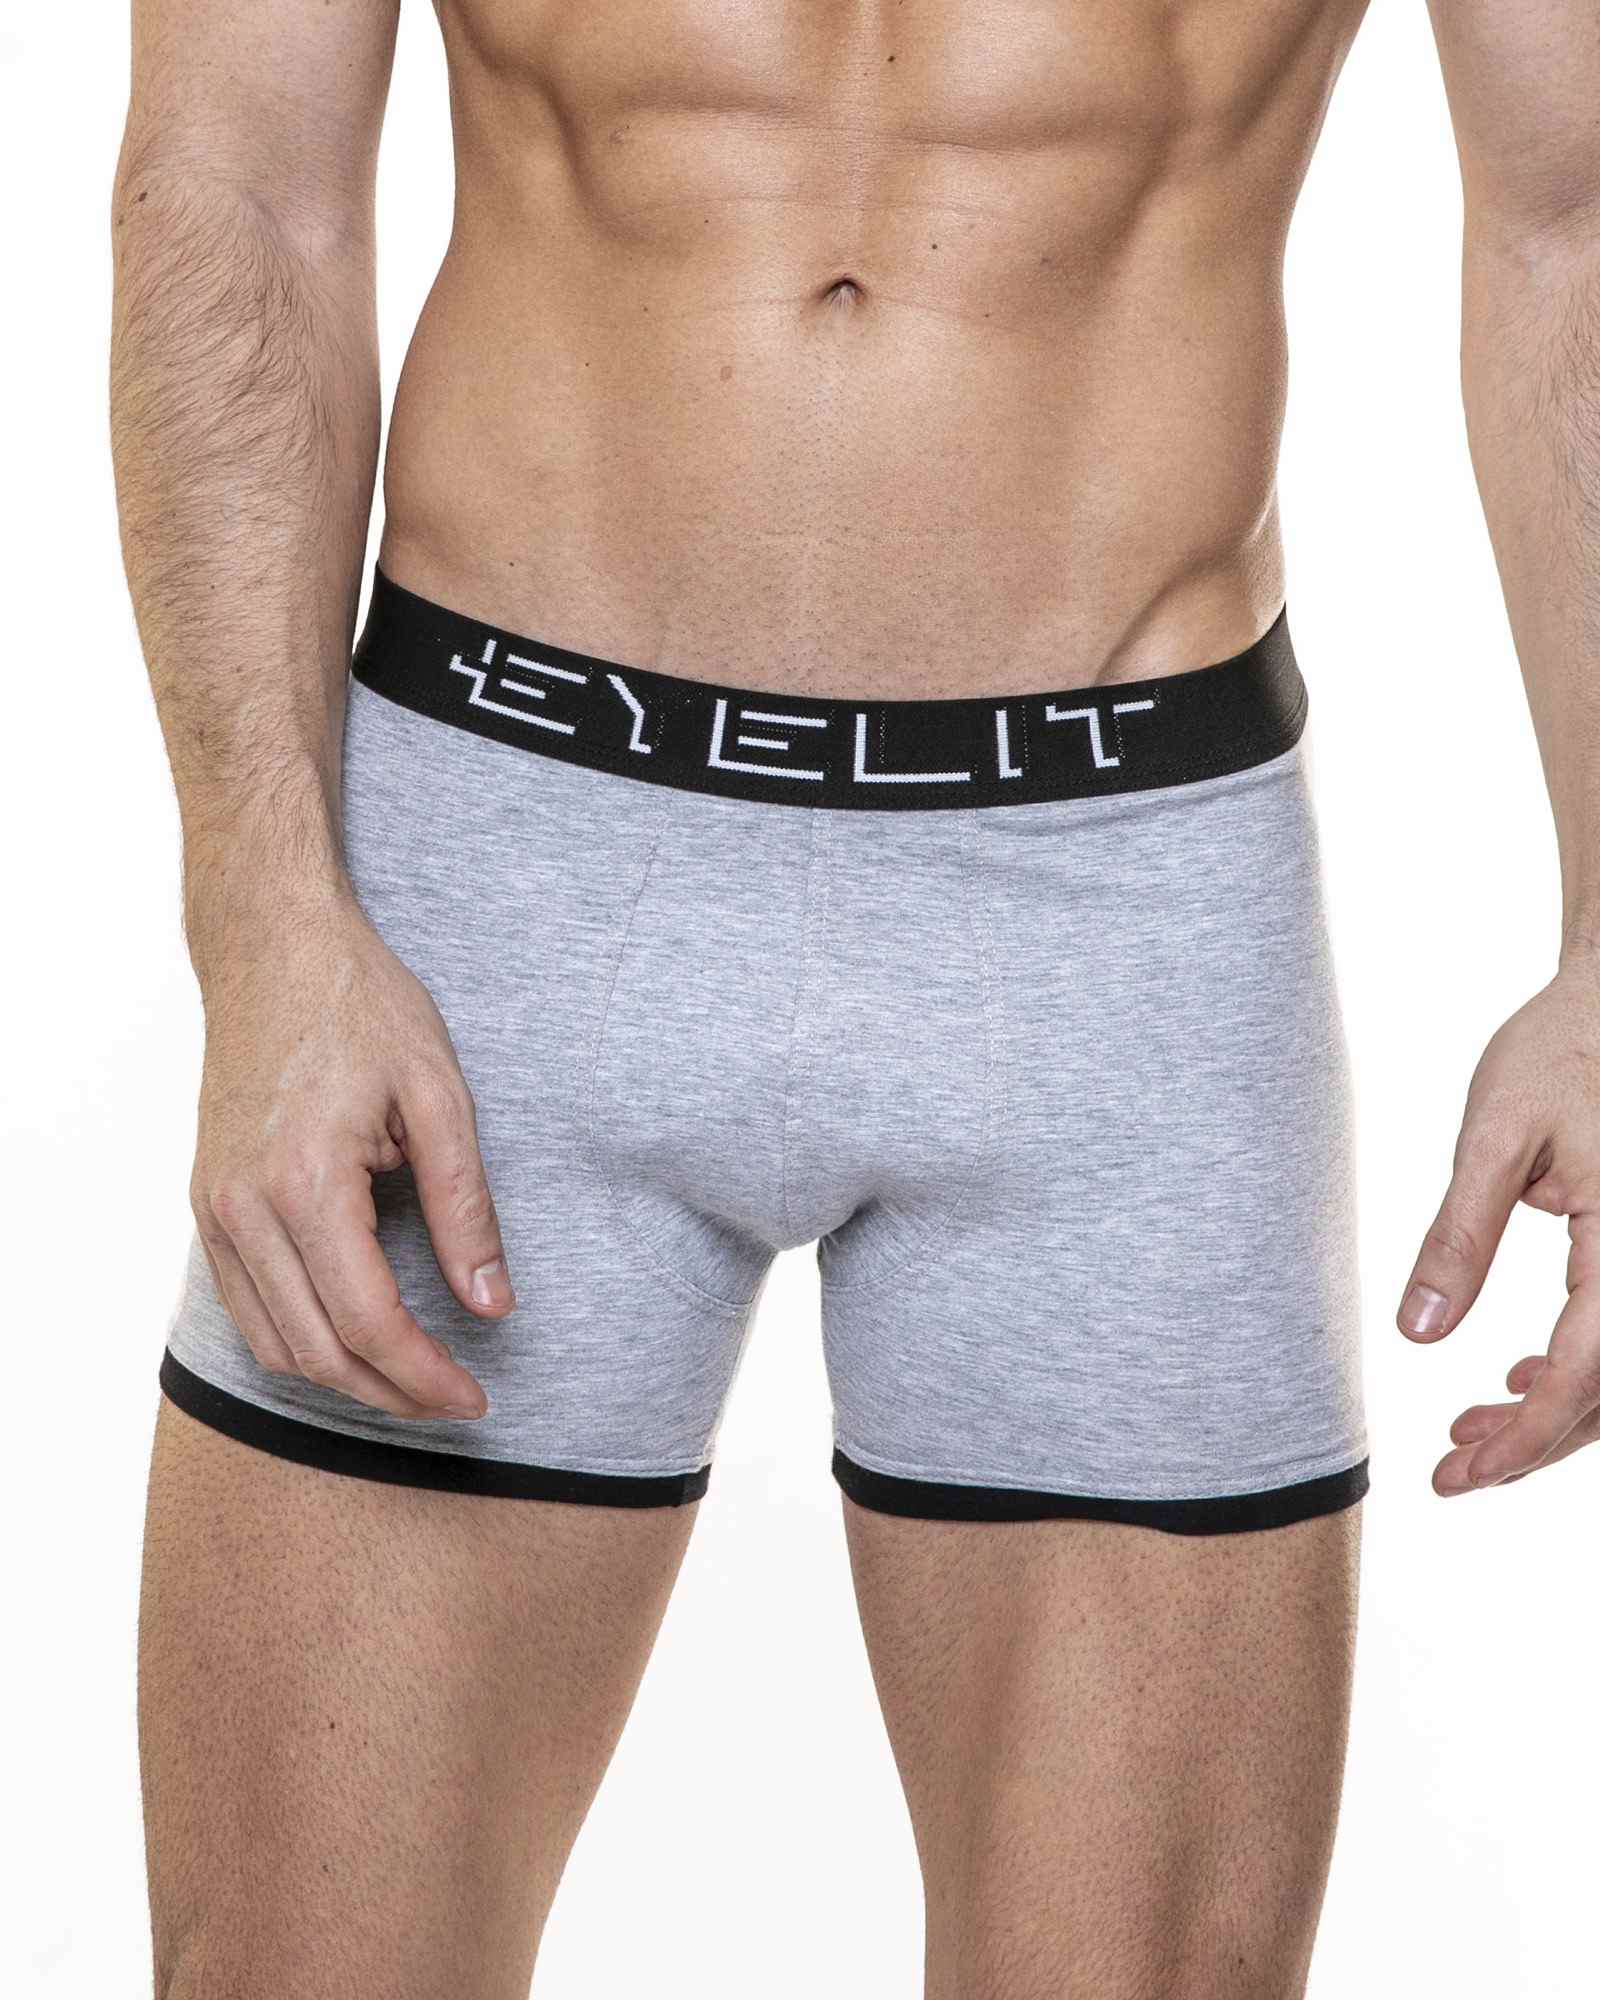 Eyelit – Eyelit Underwear